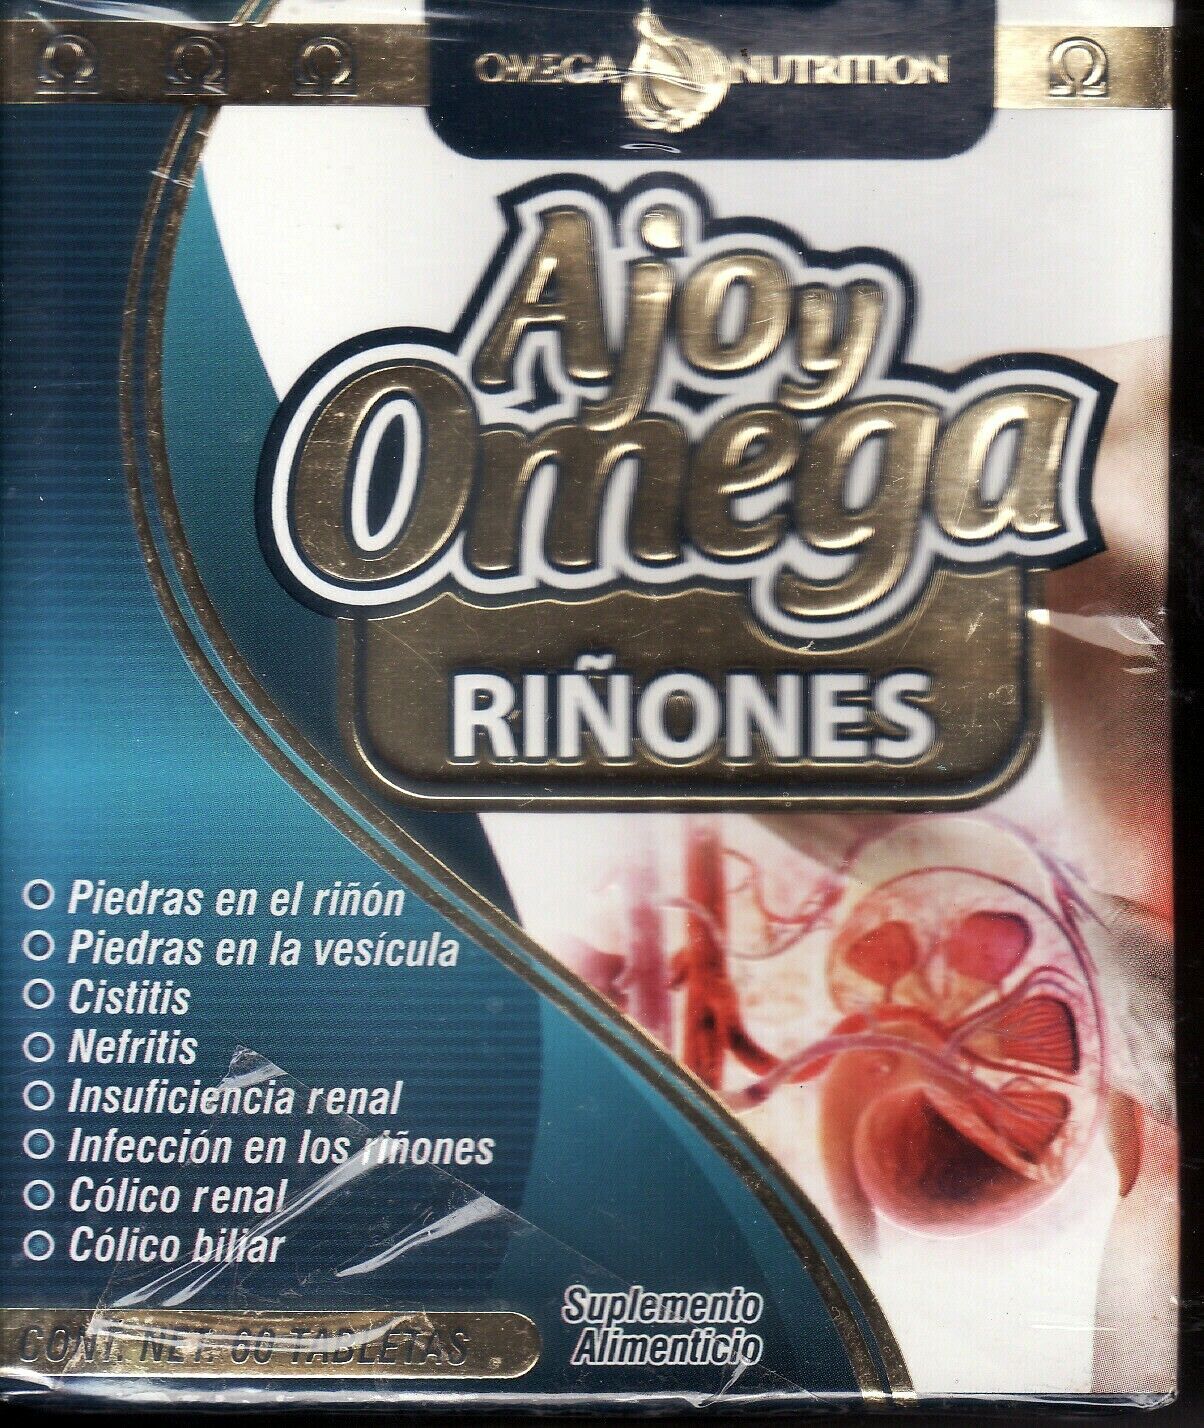 Riñon Ajo y Omega Premium 60 tabletas Exelente en padecimiento de Riñones y Vejiga.Kidney